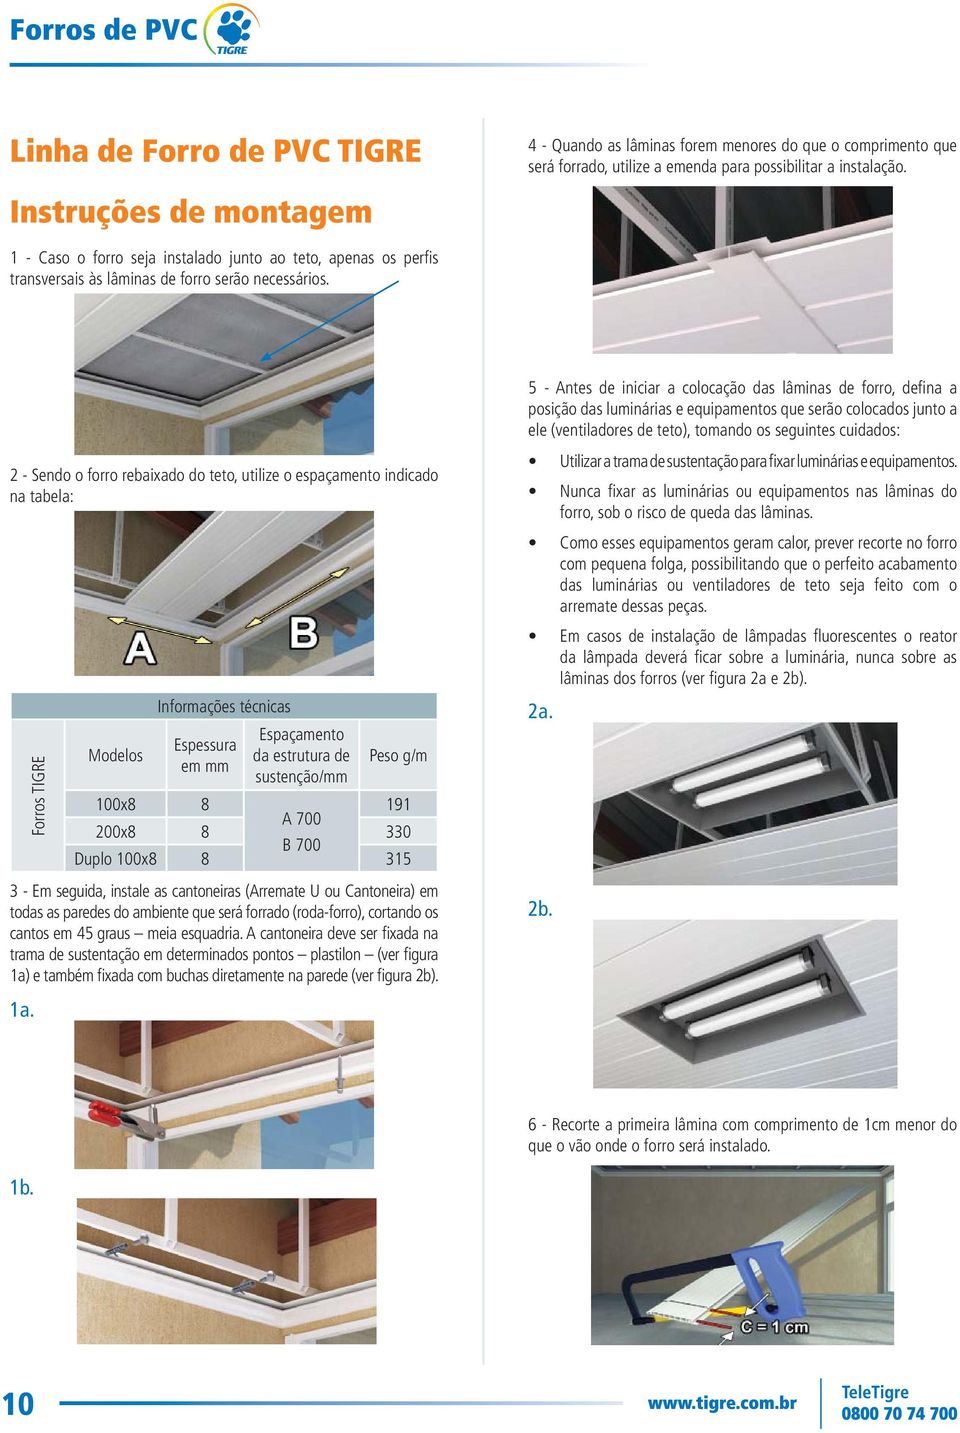 2 - Sendo o forro rebaixado do teto, utilize o espaçamento indicado na tabela: Forros TIGRE Modelos Informações técnicas Espessura em mm Espaçamento da estrutura de sustenção/mm Peso g/m 100x8 8 191